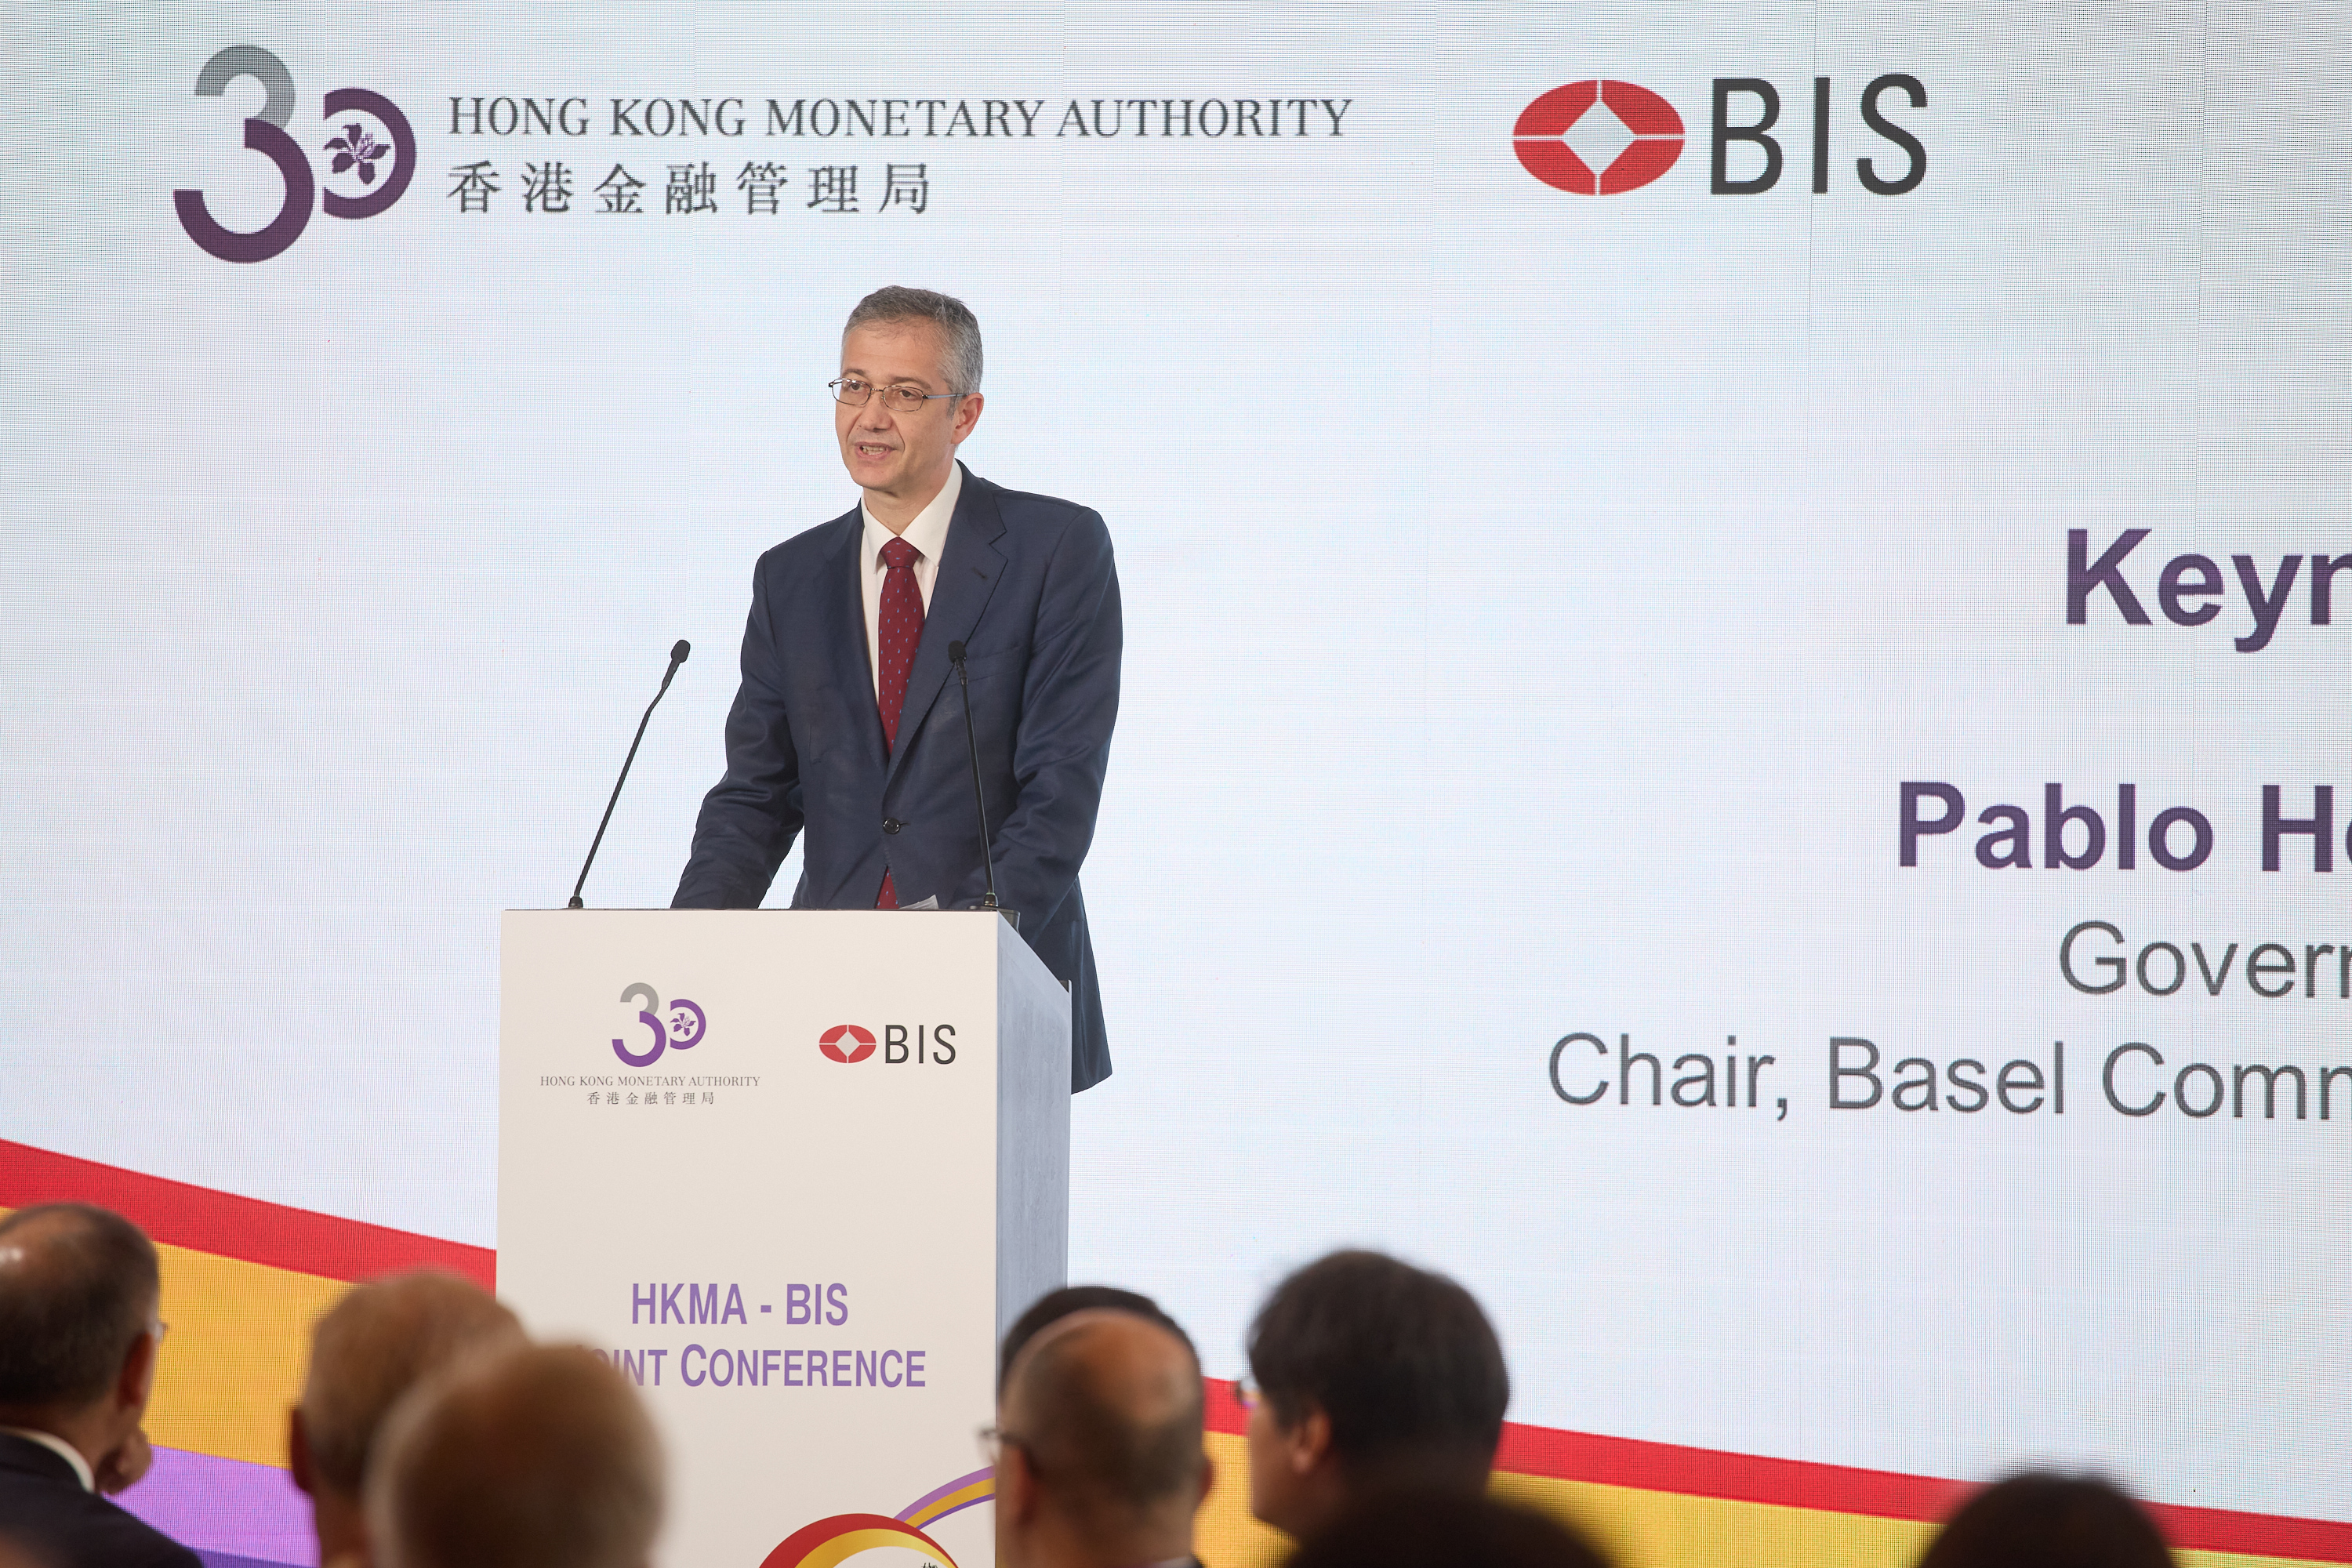 西班牙央行行长暨巴塞尔银行监管委员会主席Pablo Hernández de Cos 发表主题演讲。